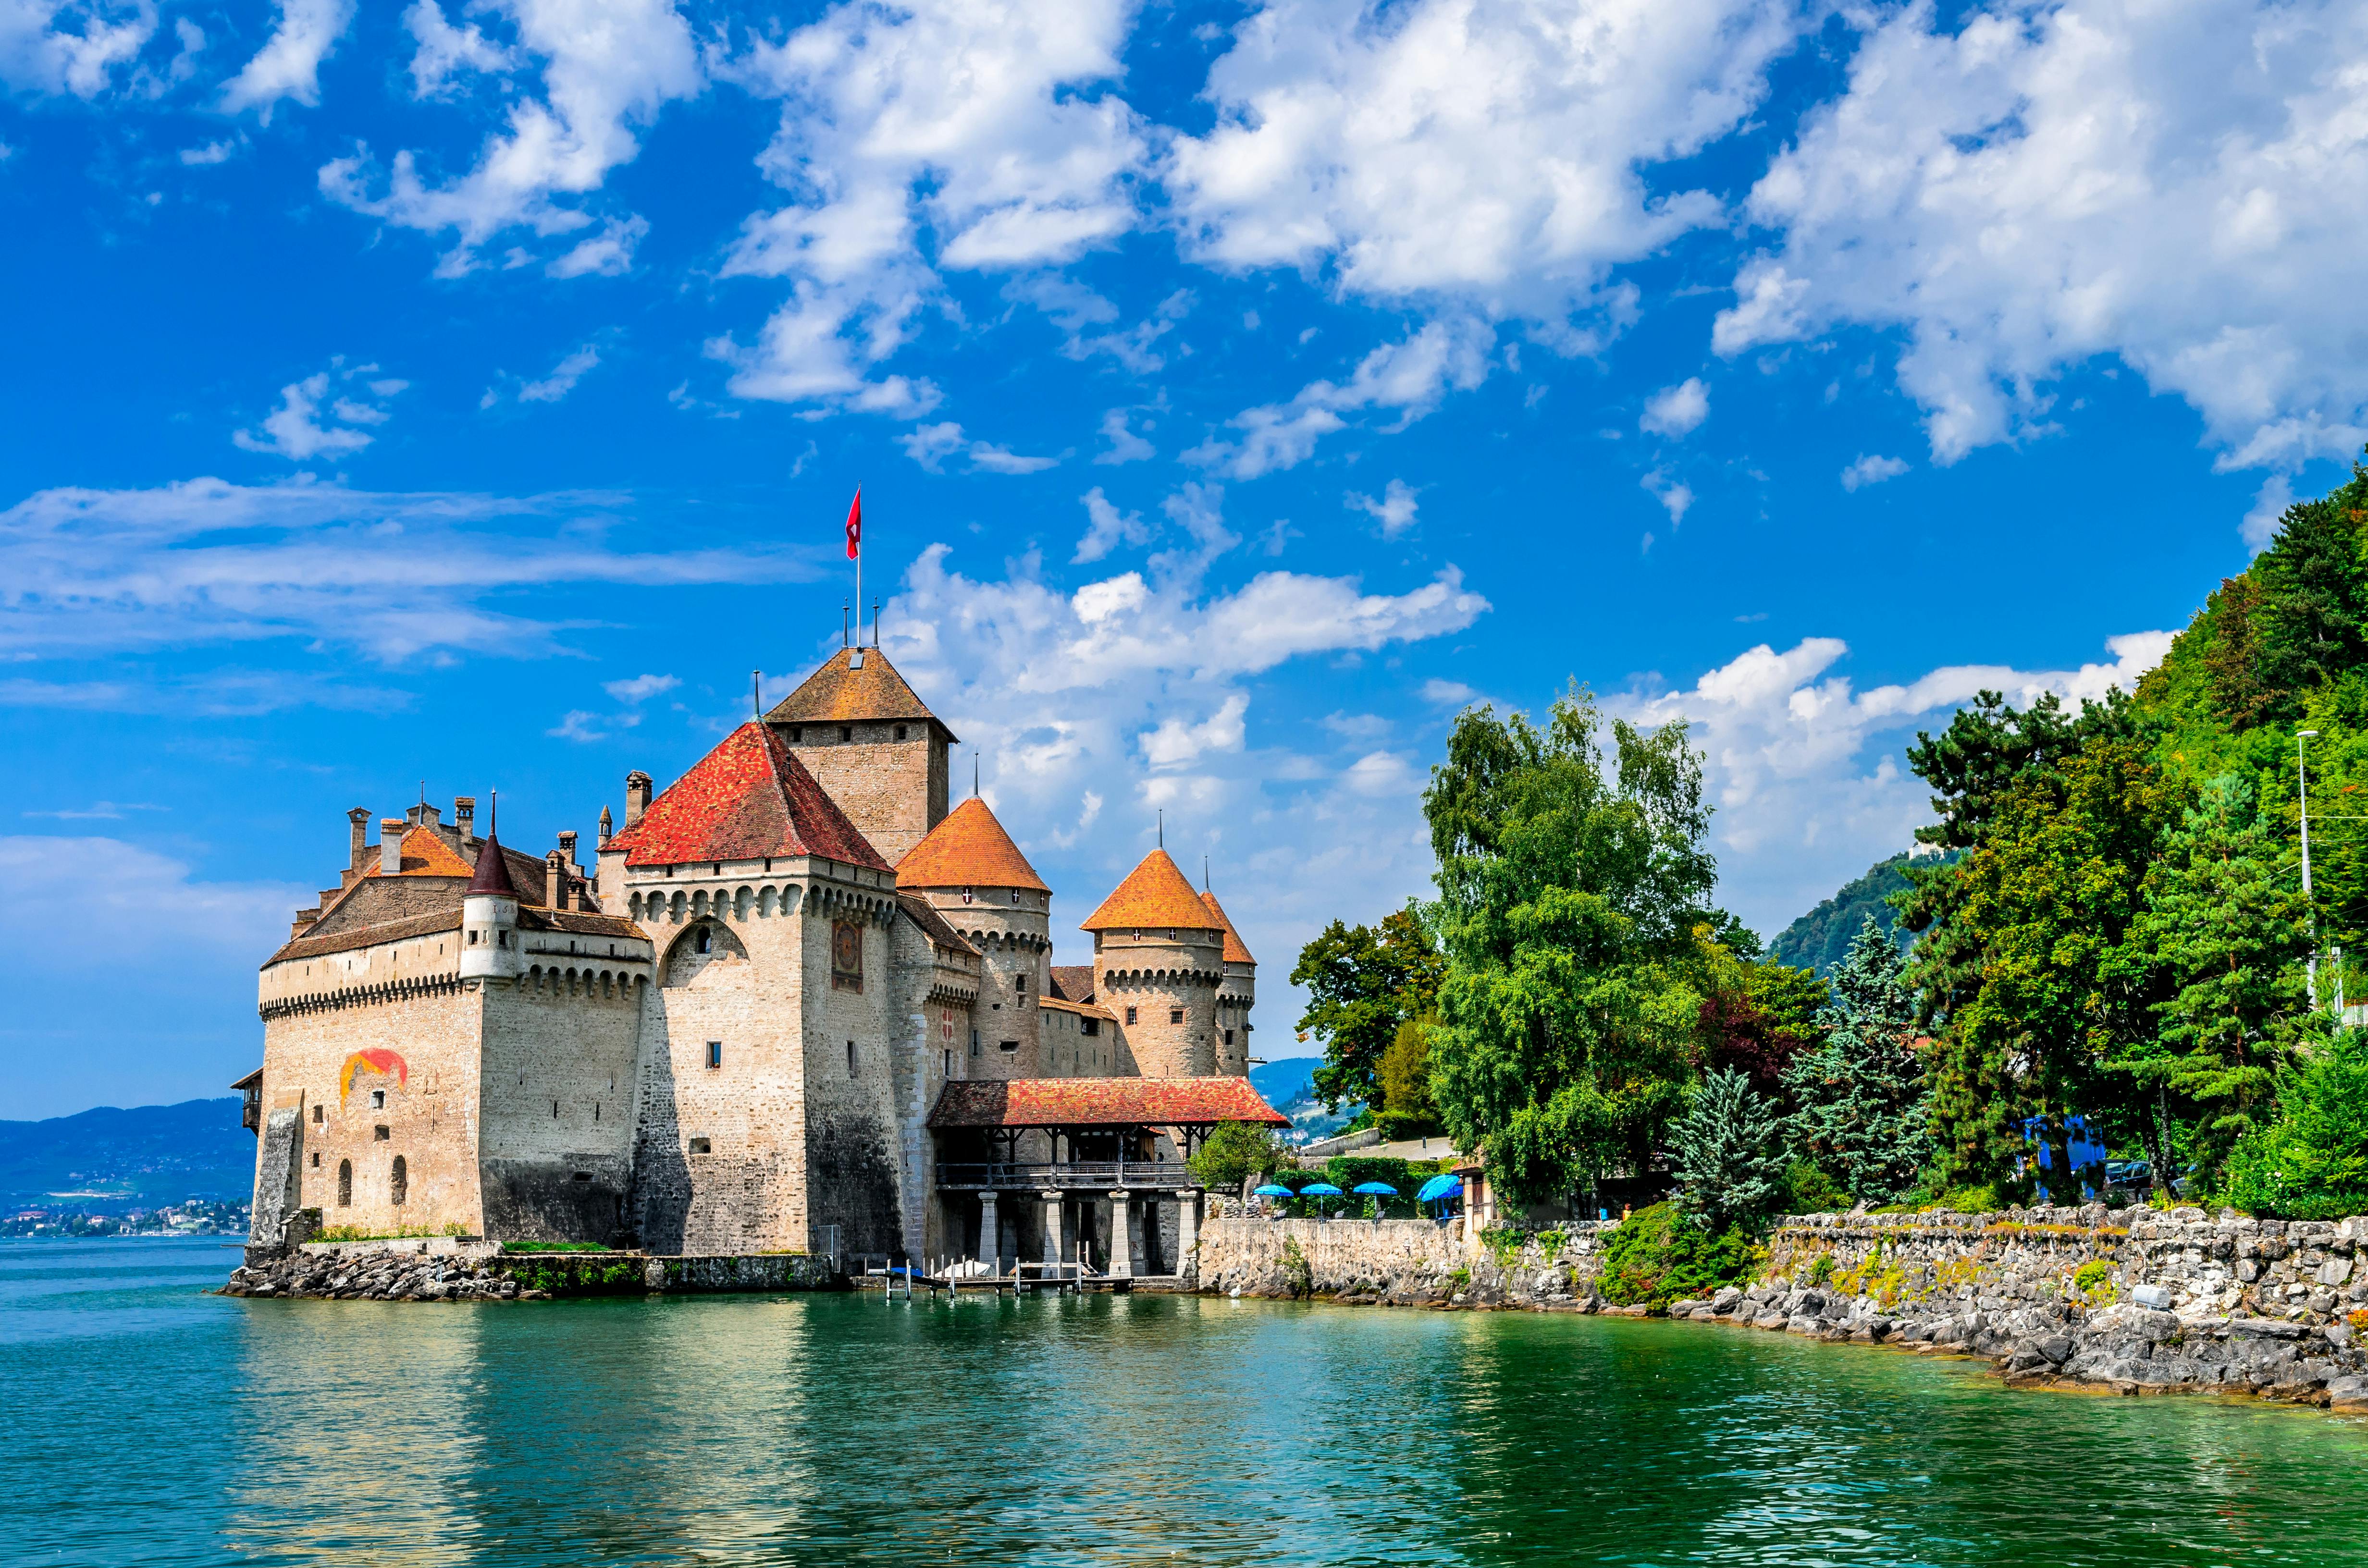 Dagtour naar het kasteel van Montreux en Chillon vanuit Lausanne met de bus